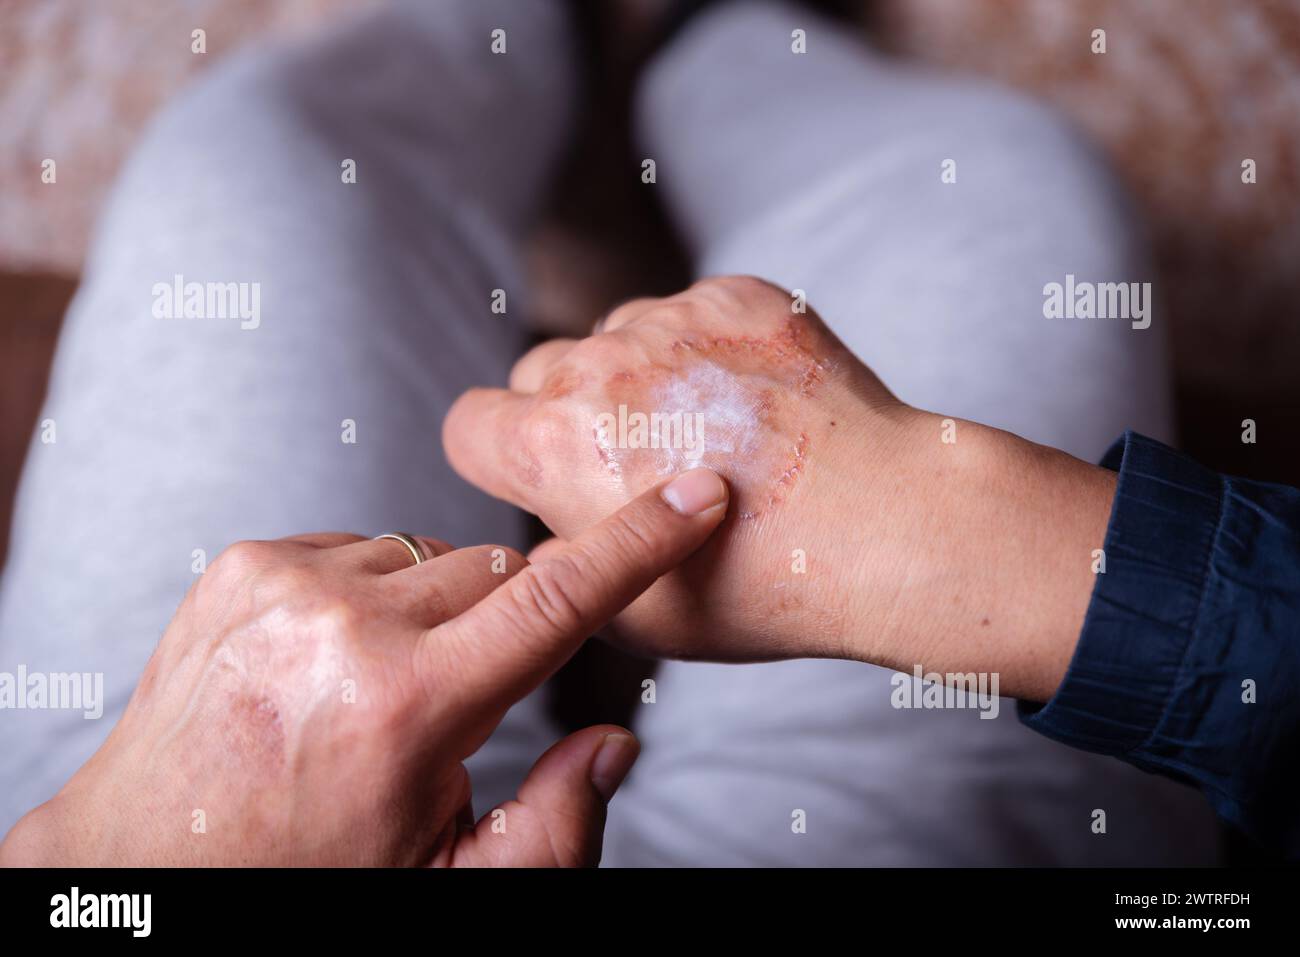 Application d'une crème sur la main d'une personne méconnaissable avec une réaction cutanée allergique. Banque D'Images